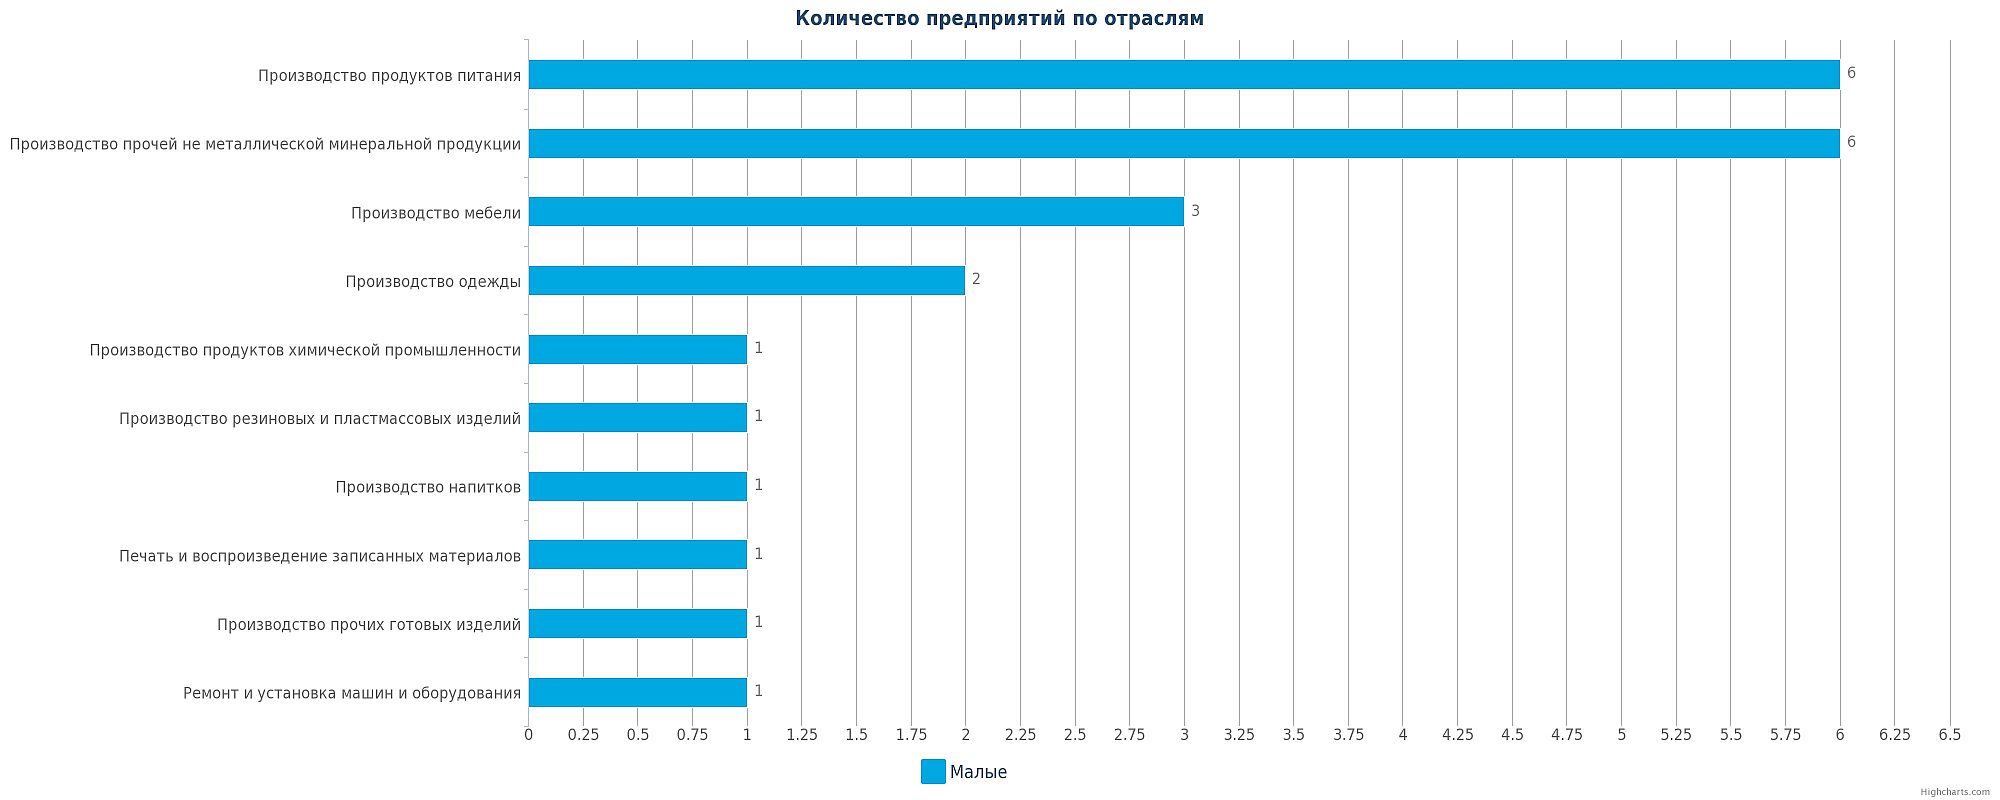 Смотря сколько фабрик сколько дитейлс. Крупнейшие компании Казахстана по отраслям.